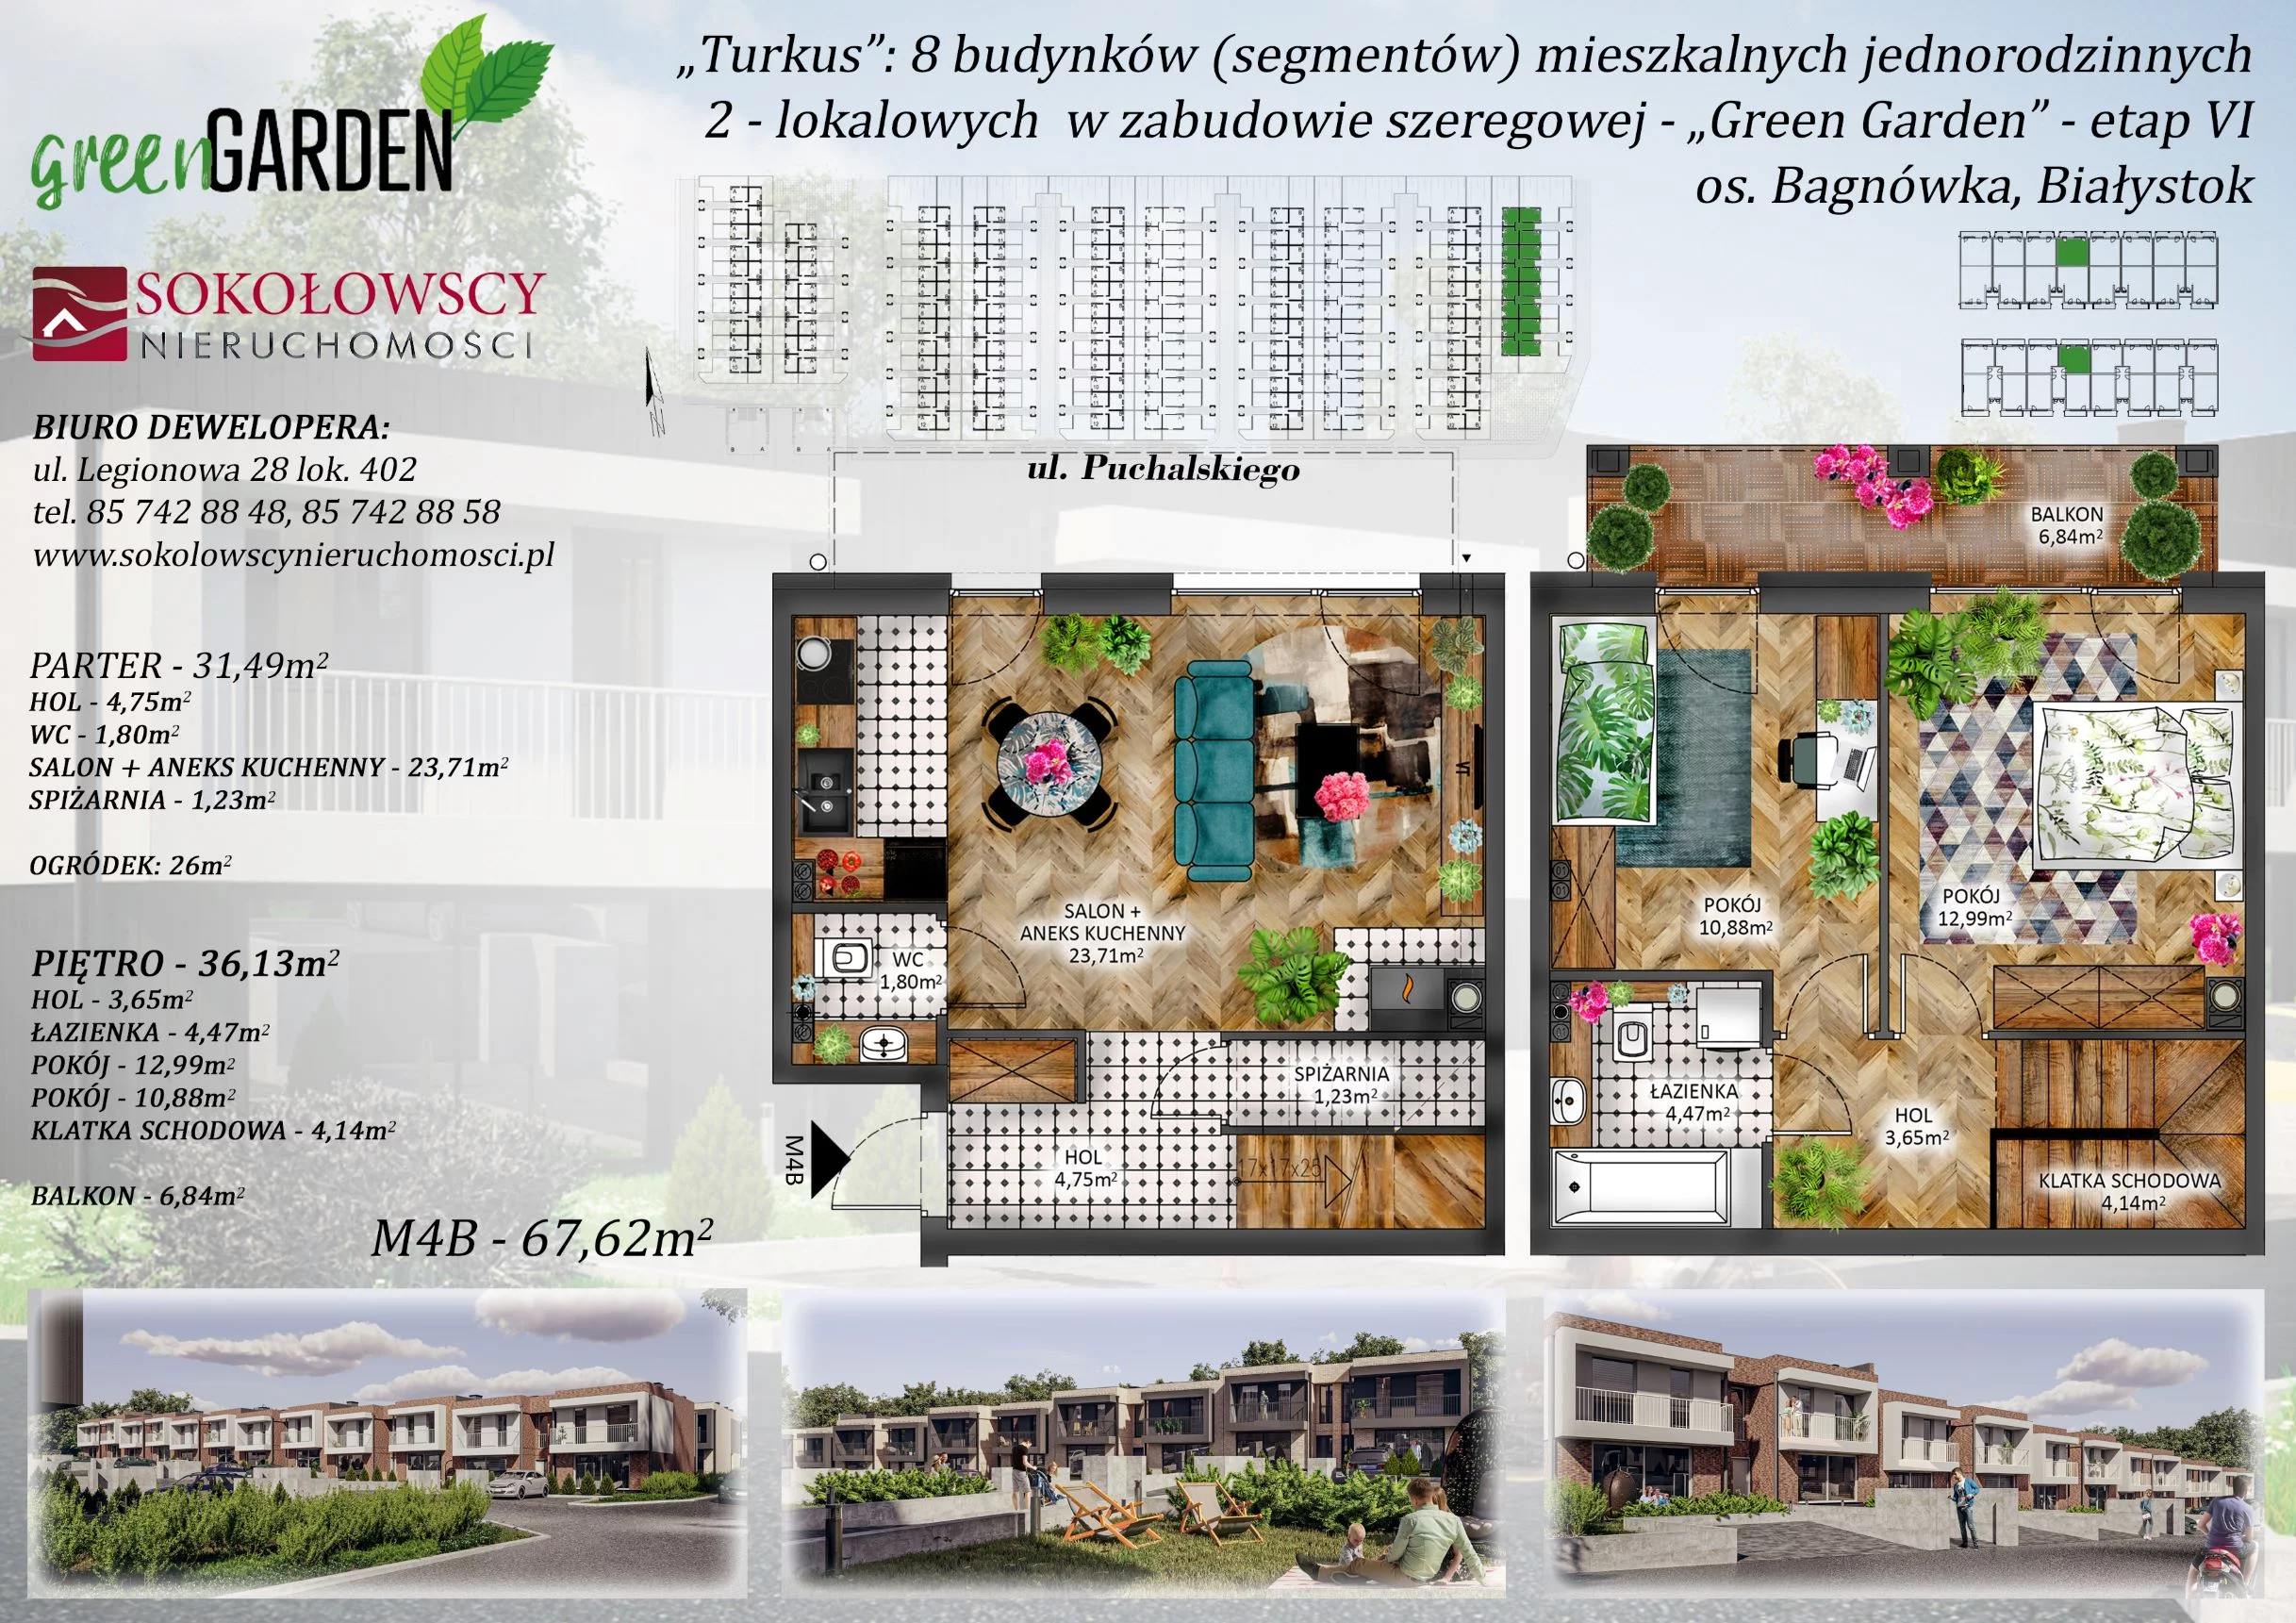 Mieszkanie 67,62 m², parter, oferta nr 4B, Green Garden etap 6, Białystok, Bagnówka, ul. Karola Puchalskiego